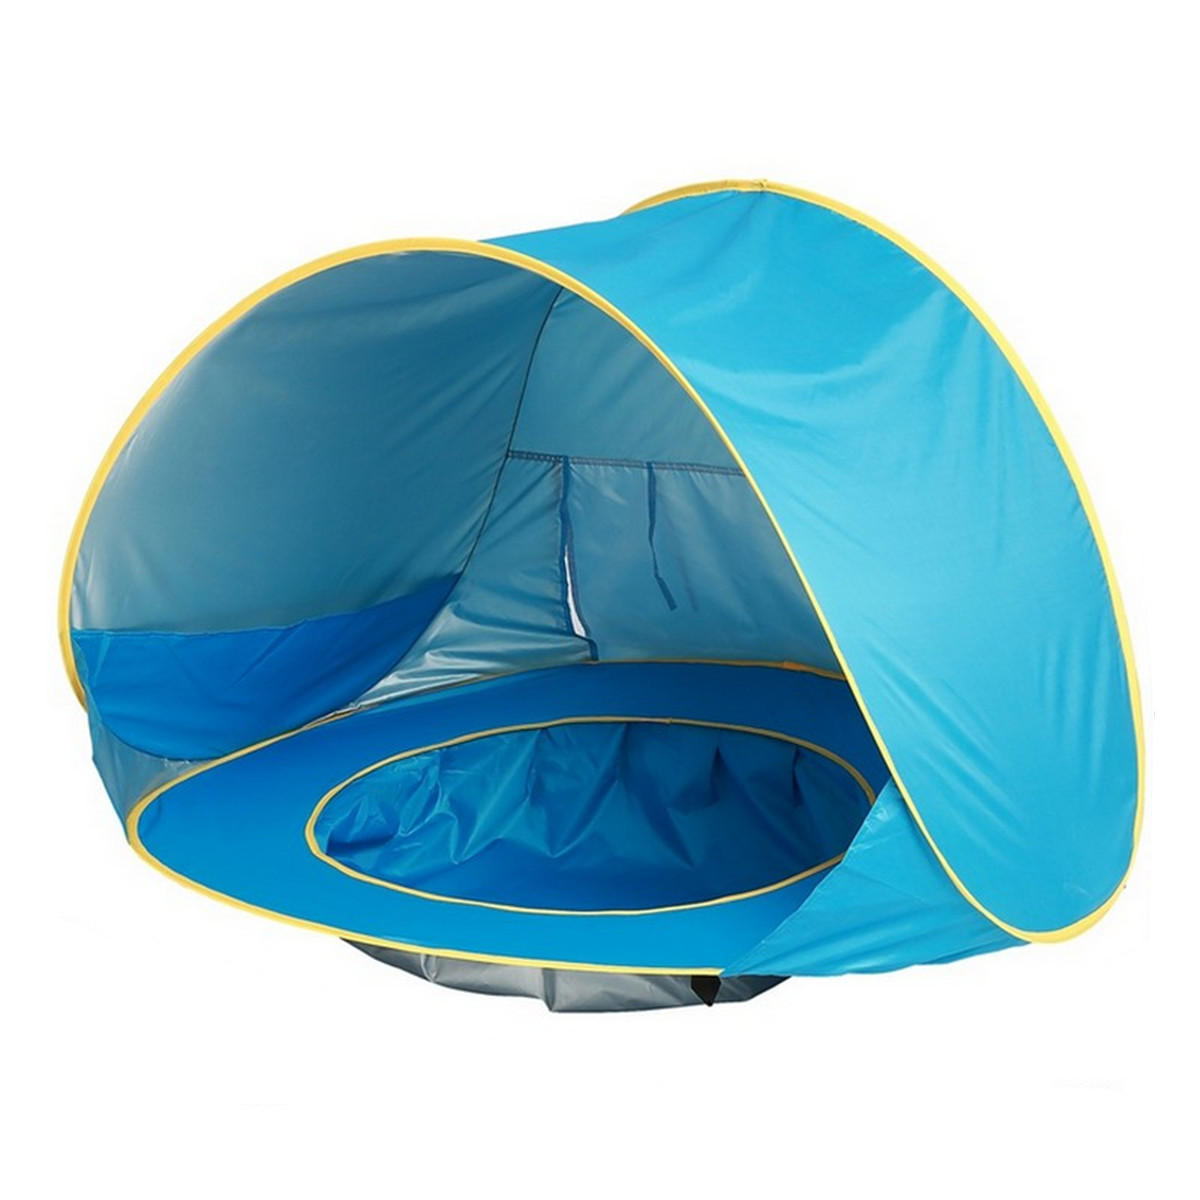 Baby-Strandzelt mit UV-Schutz und Pool, wasserdicht, einfach aufzustellen, für Outdoor-Camping und Sonnenschutz.